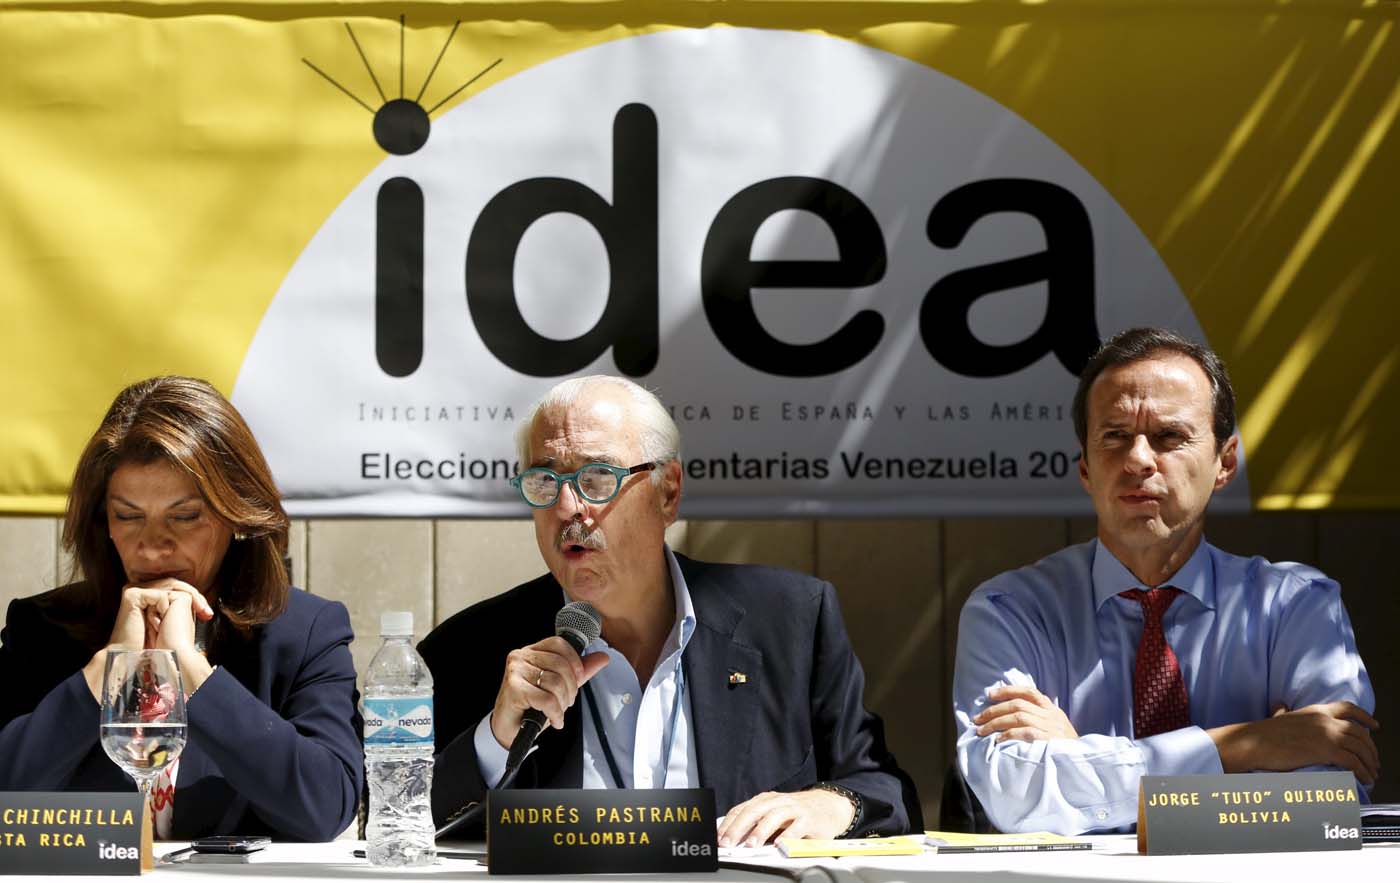 El grupo IDEA se reunió con representantes de las coaliciones Soy Venezuela y el Frente Amplio Venezuela Libre para constatar la radicalización que ha tomado el Gobierno venezolano